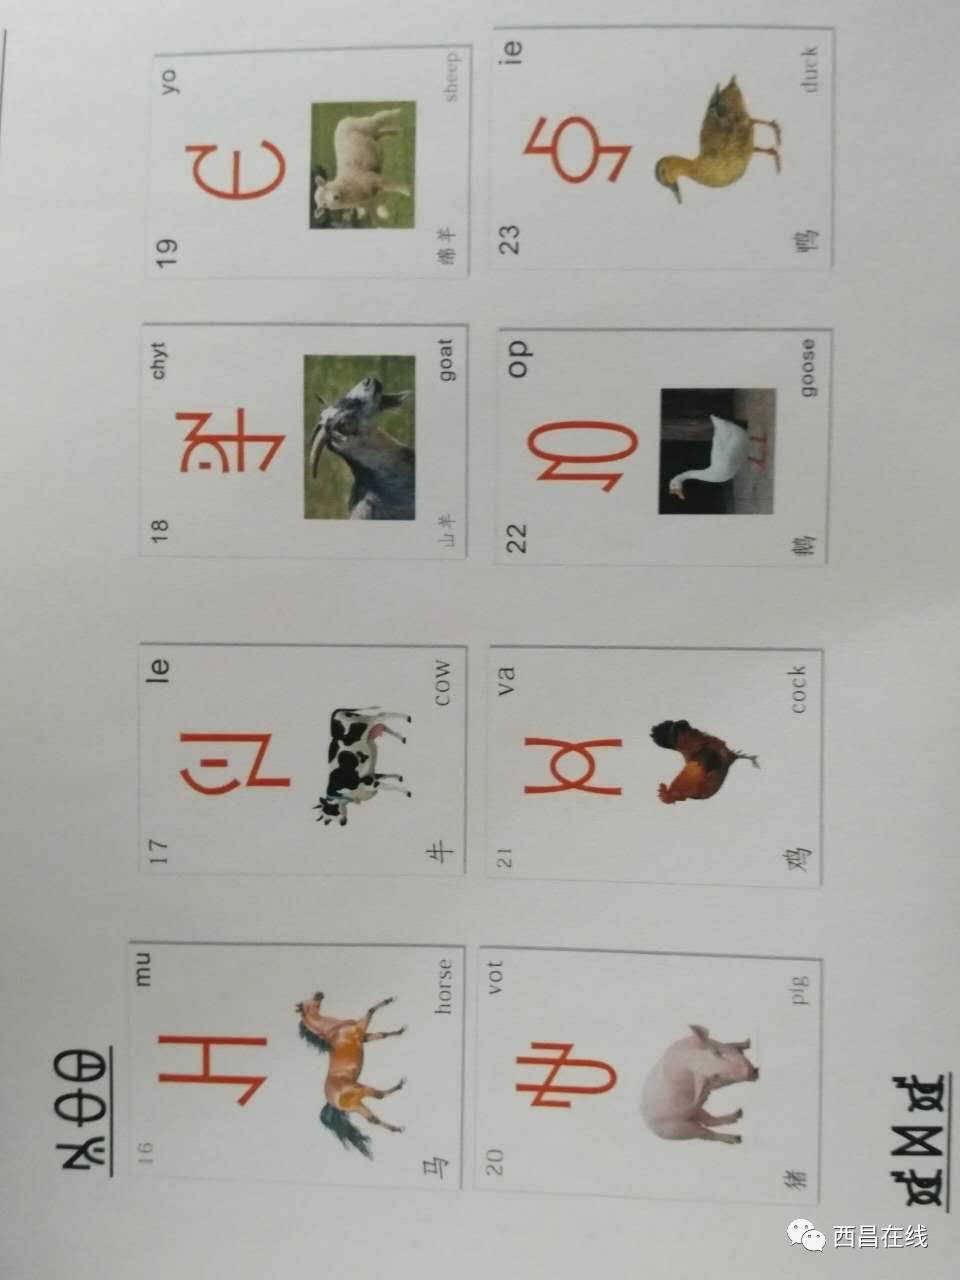 彝语拼音图片